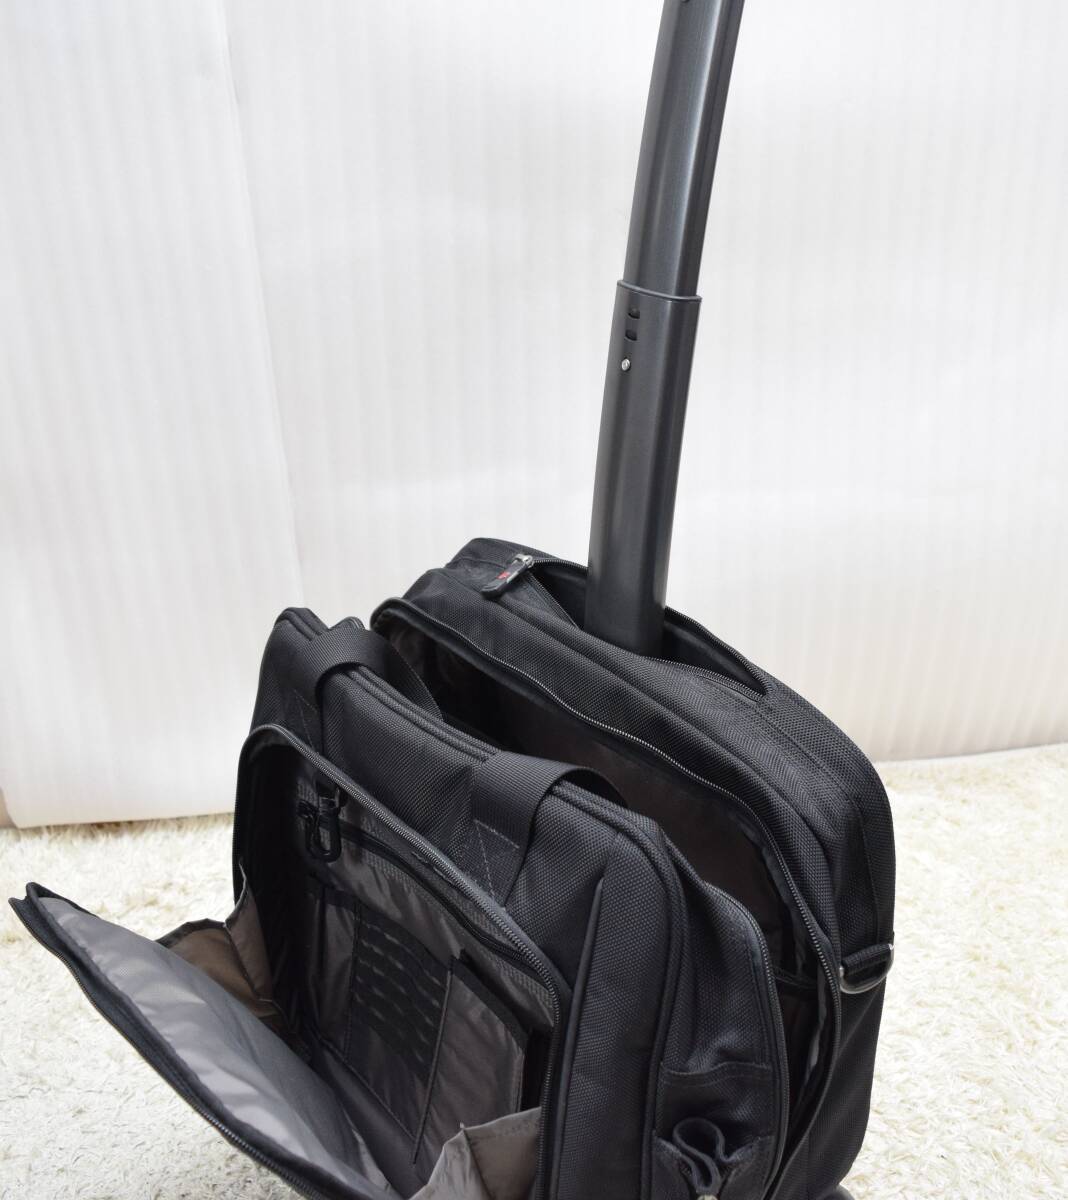 ビクトリノックス Victorinox ビジネス コロコロ 2輪 キャリー バッグ 仕事 鞄 旅行 出張 スーツ ケース かばん_画像8